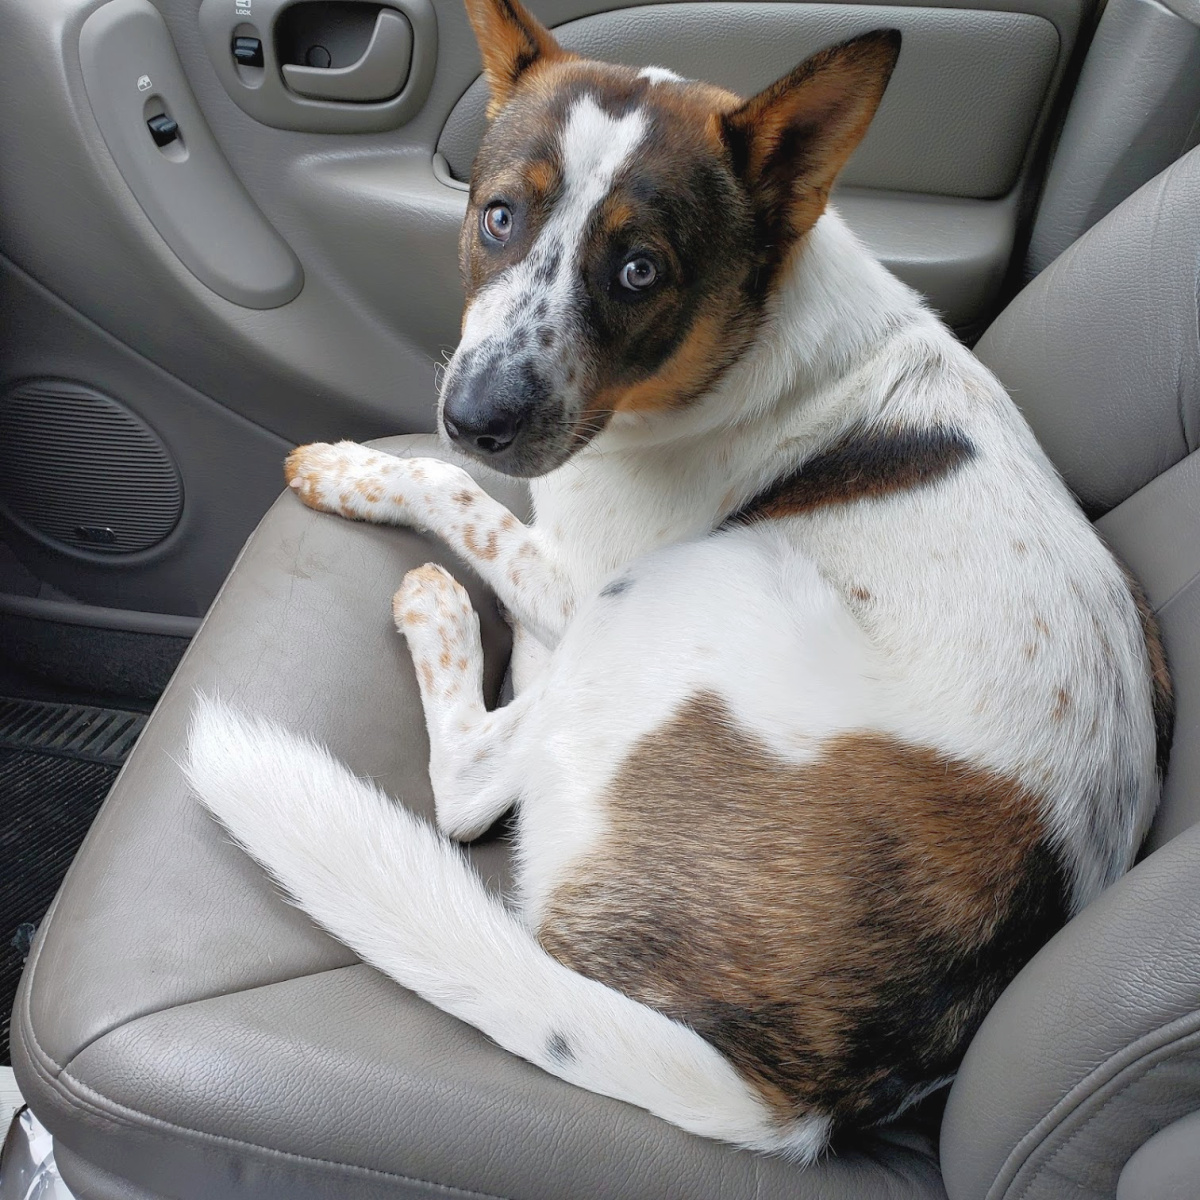 Apollo the dog in a car